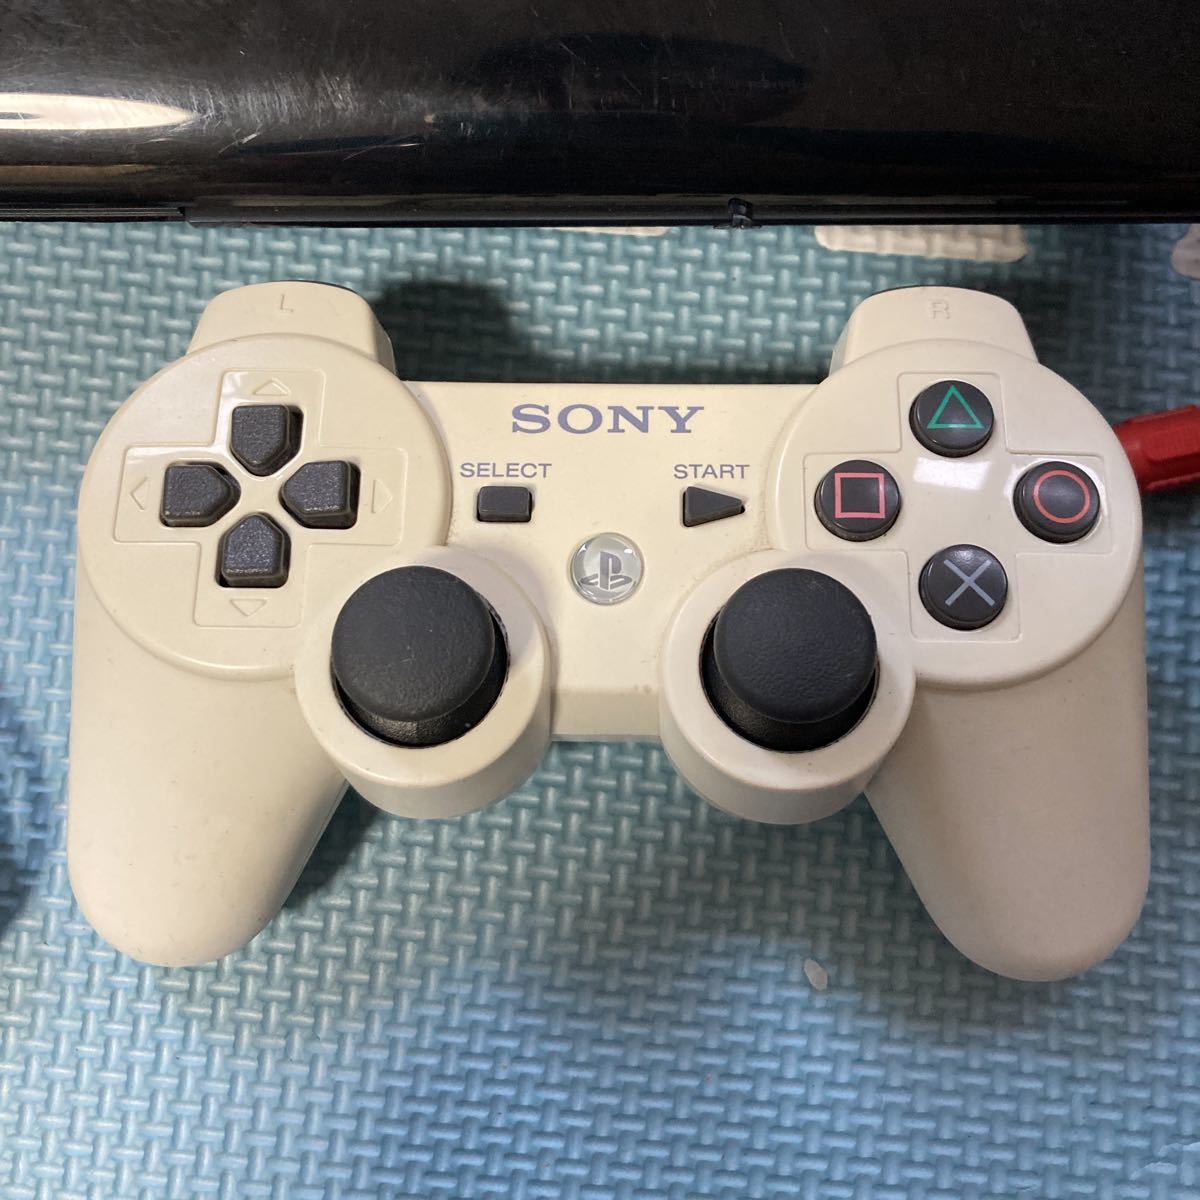 すぐに遊べる PS3 PlayStation3 プレイステーション3 本体 新型 付属品